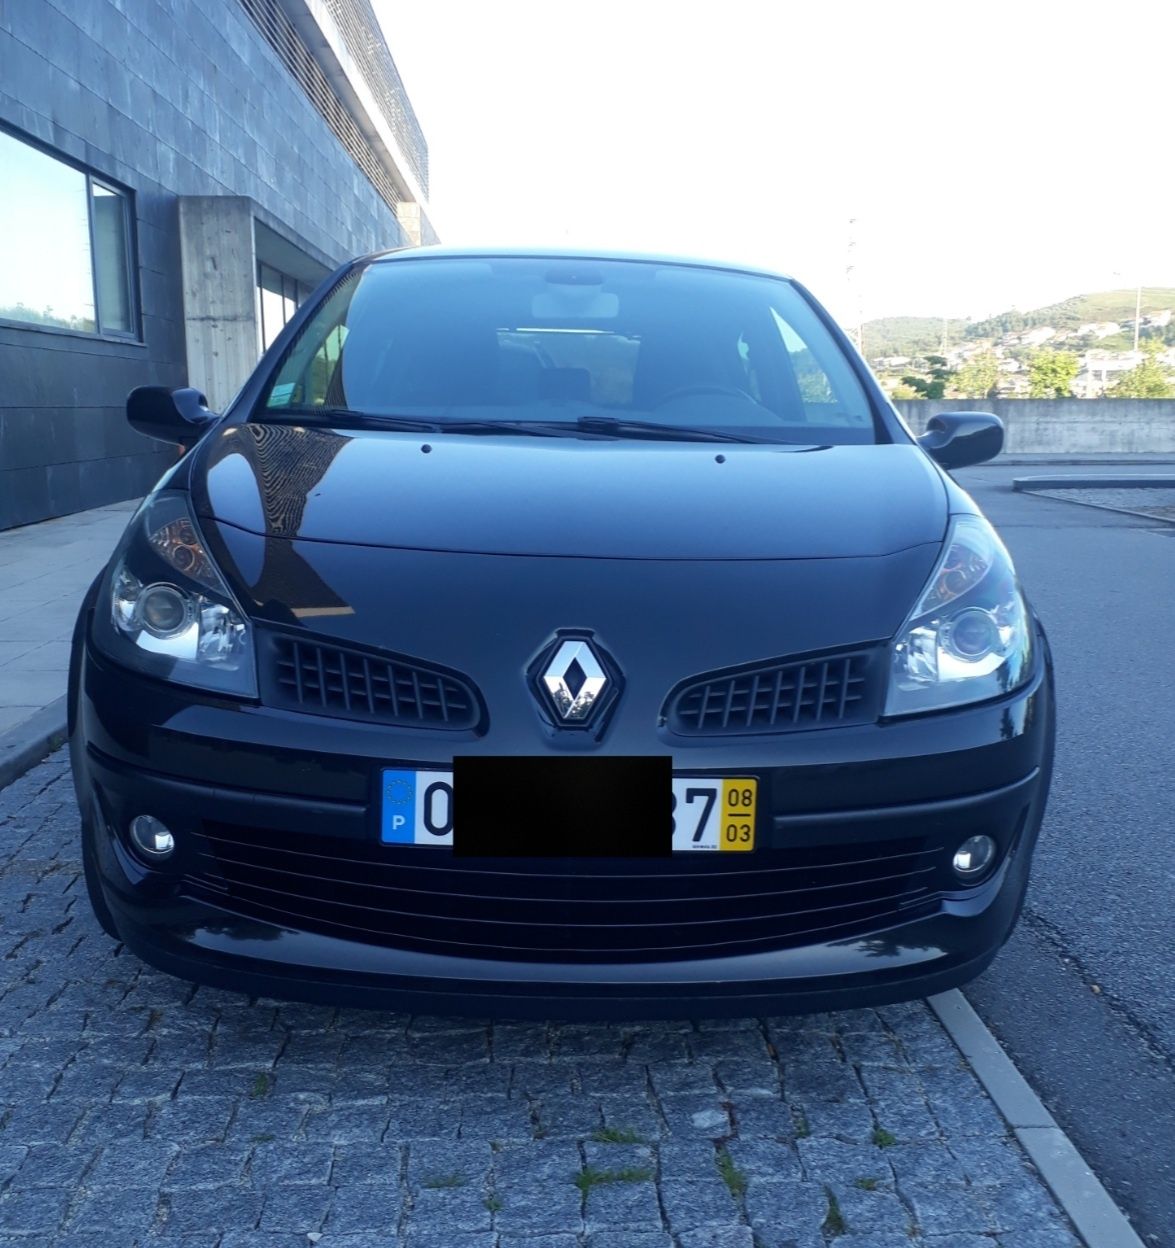 Grelha Renault clio 3